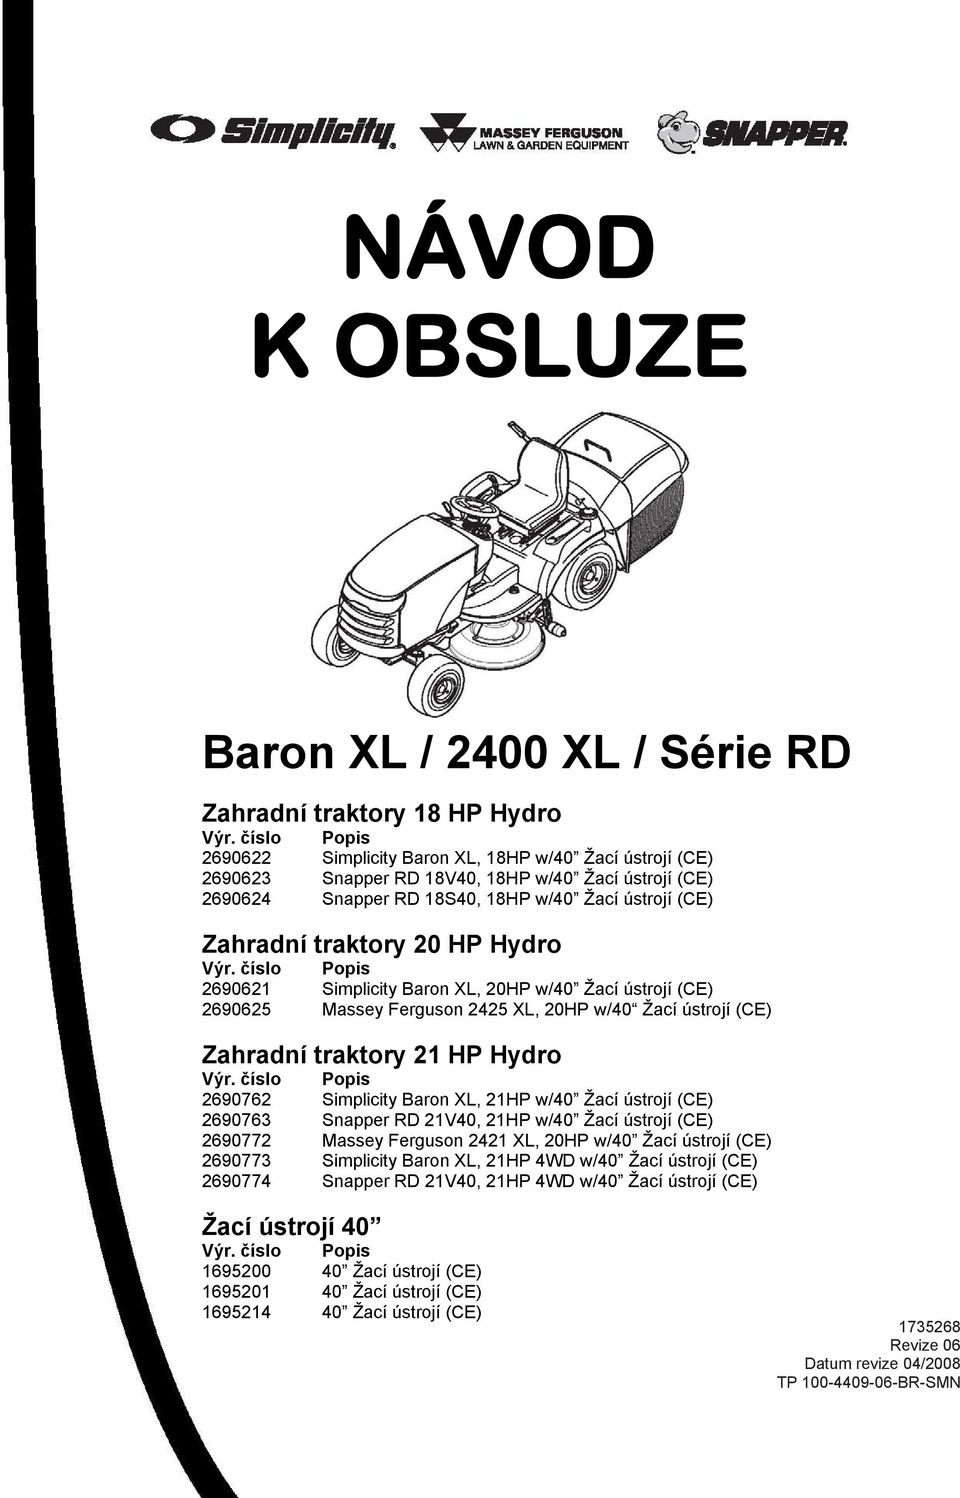 HP Hydro Výr. číslo Popis 2690621 Simplicity Baron XL, 20HP w/40 Žací ústrojí (CE) 2690625 Massey Ferguson 2425 XL, 20HP w/40 Žací ústrojí (CE) Zahradní traktory 21 HP Hydro Výr.